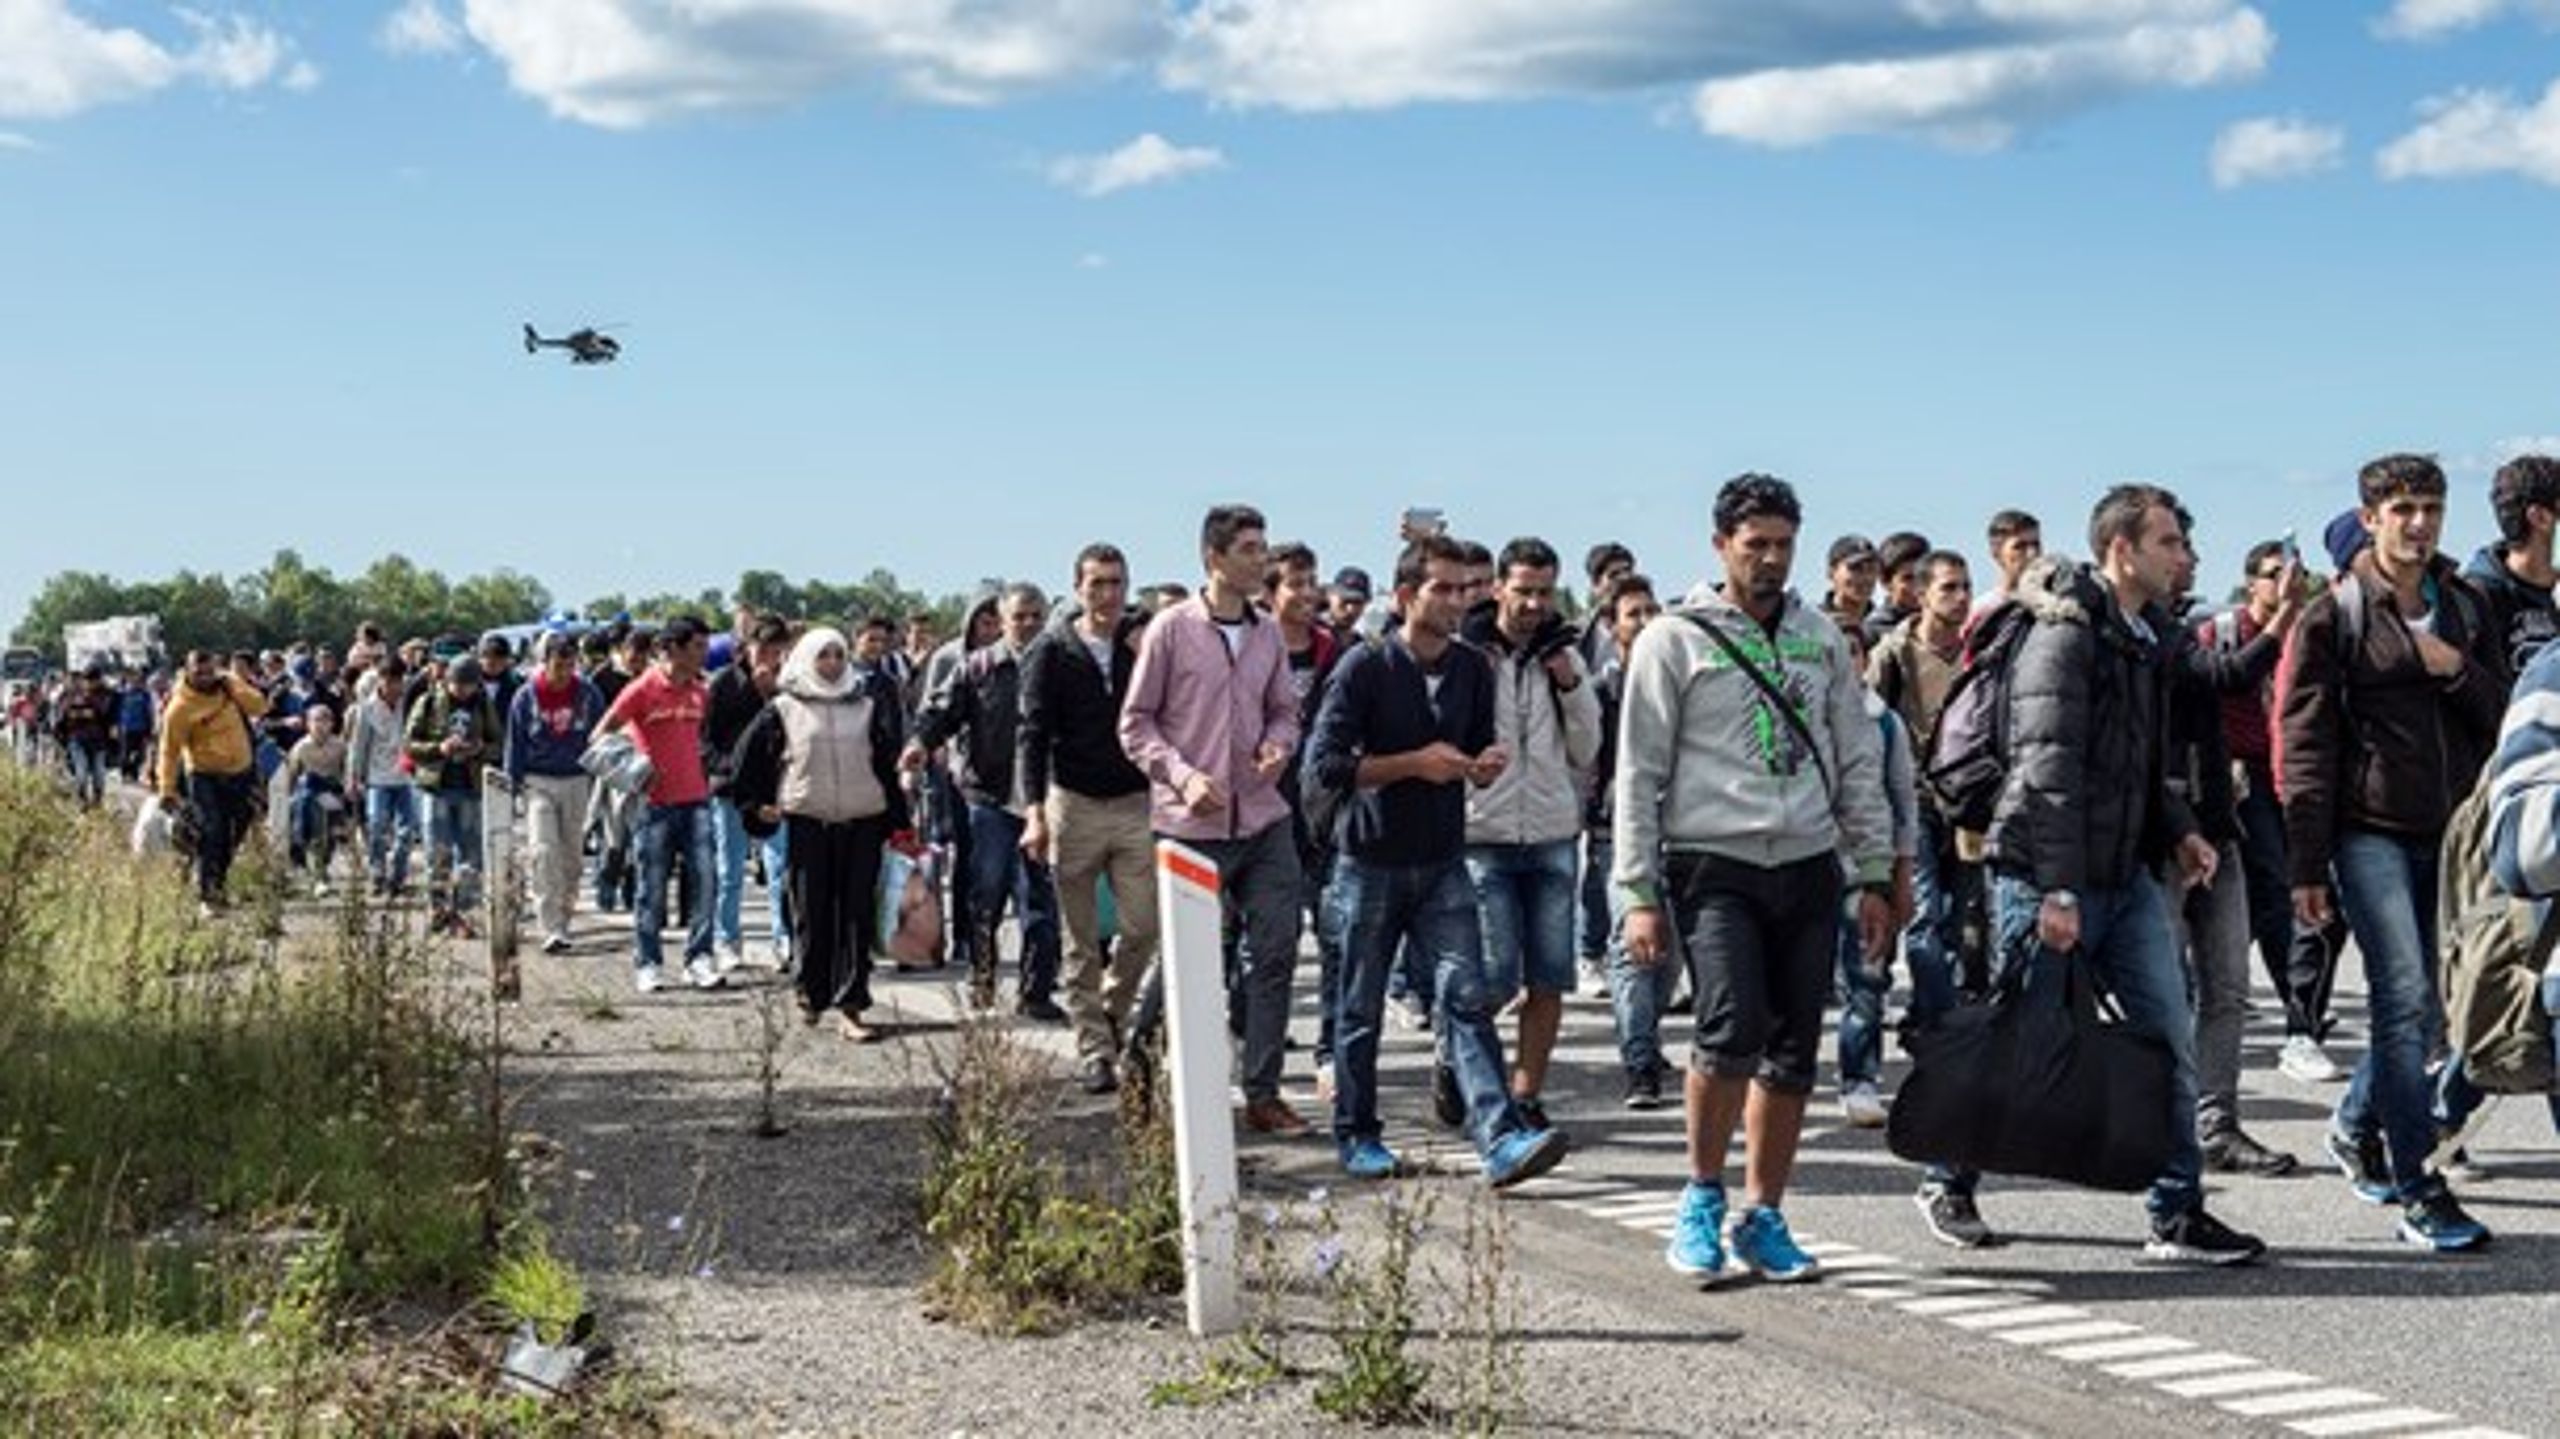 Flygtninge og migranter på motorvejene gjorde et stort indtryk på mange vælgere. Men i takt med at socialdemokraterne har strammet kursen, har de borgerlige mistet forspringet i udlændingepolitikken.<br>